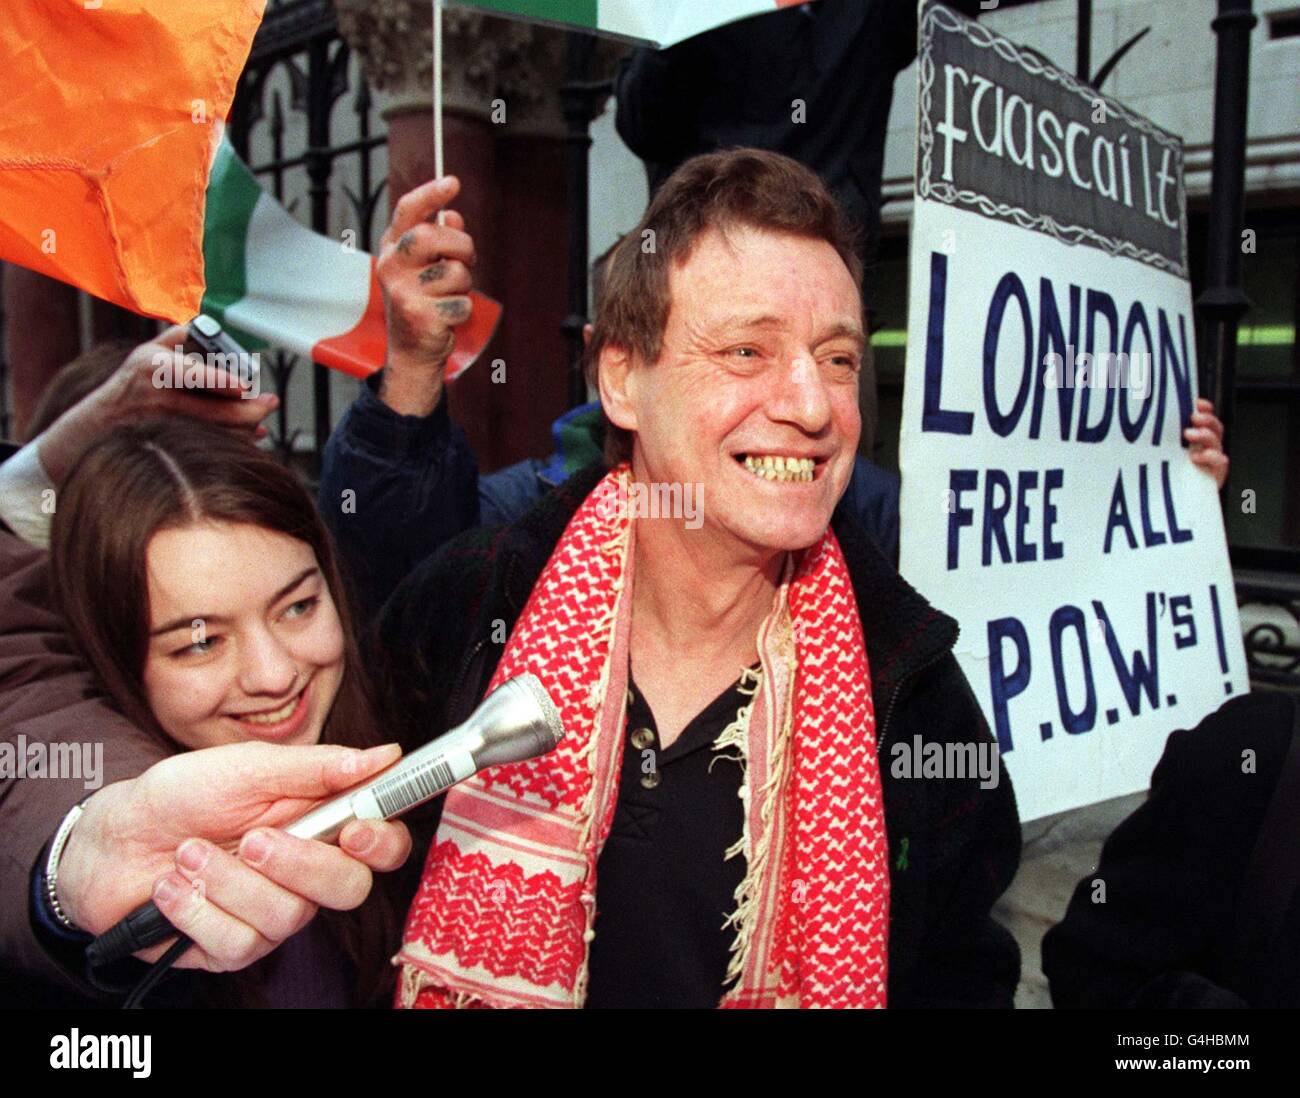 Nicholas Mullen, l'ultimo prigioniero repubblicano detenuto in una prigione britannica, lascia la Corte d'appello di Londra con la figlia Jessica dopo essere stata liberata dalla corte. Mullen, 50 anni, è stato incarcerato per 30 anni nel giugno 1990 per la cospirazione per causare esplosioni. Foto Stock